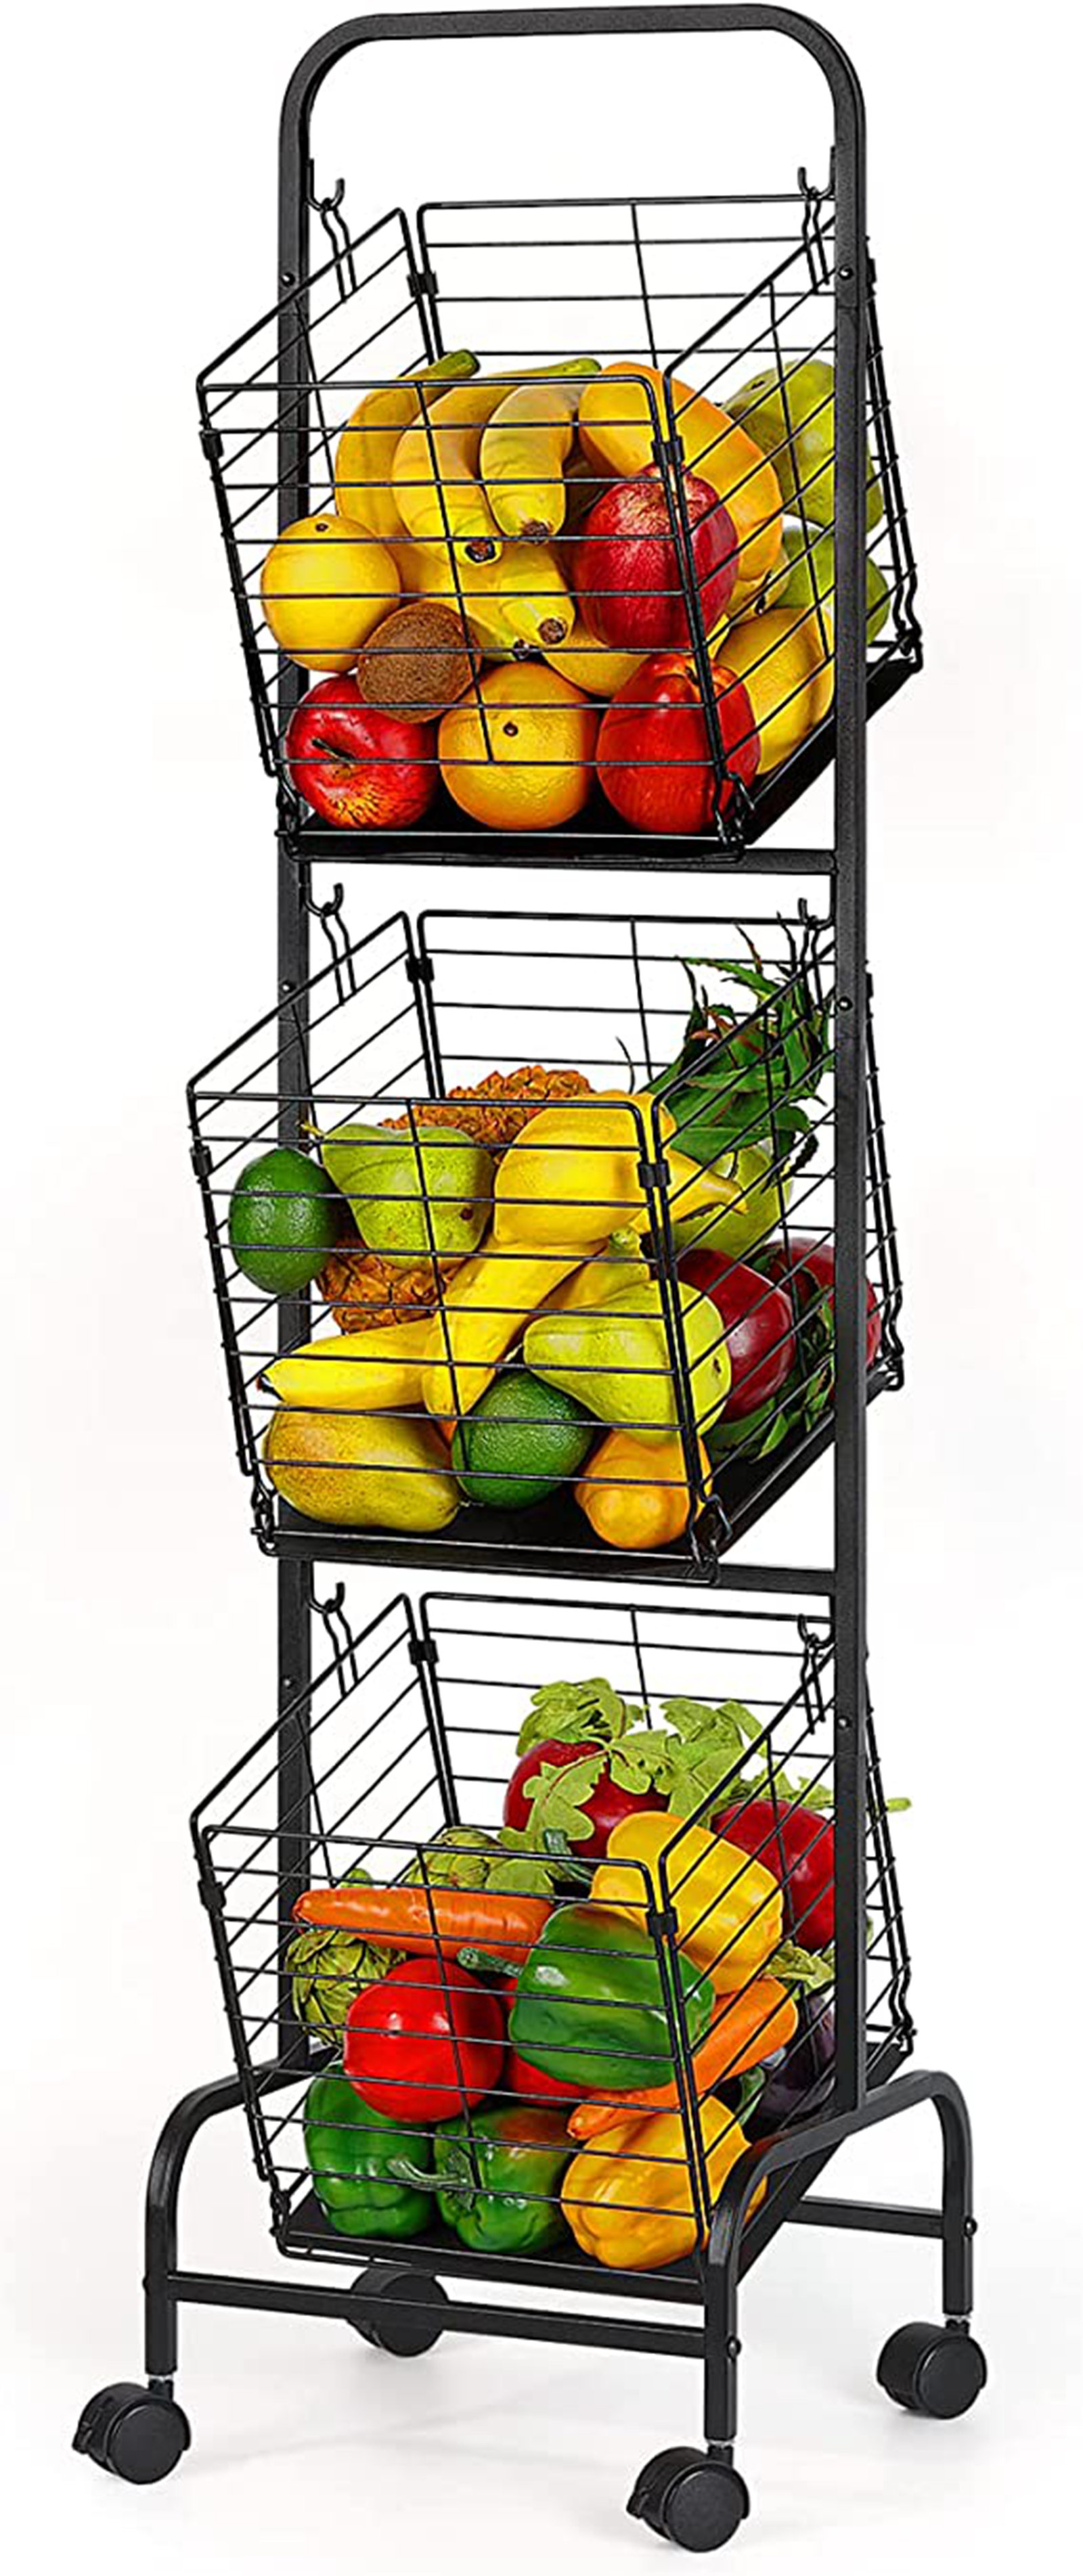 D-GROEE Fruit Storage Basket, Stackable Vegetable Fruit Basket Utility  Rack,Plastic Storage Organizer Bin for Kitchen, Pantry Closet, Bedroom